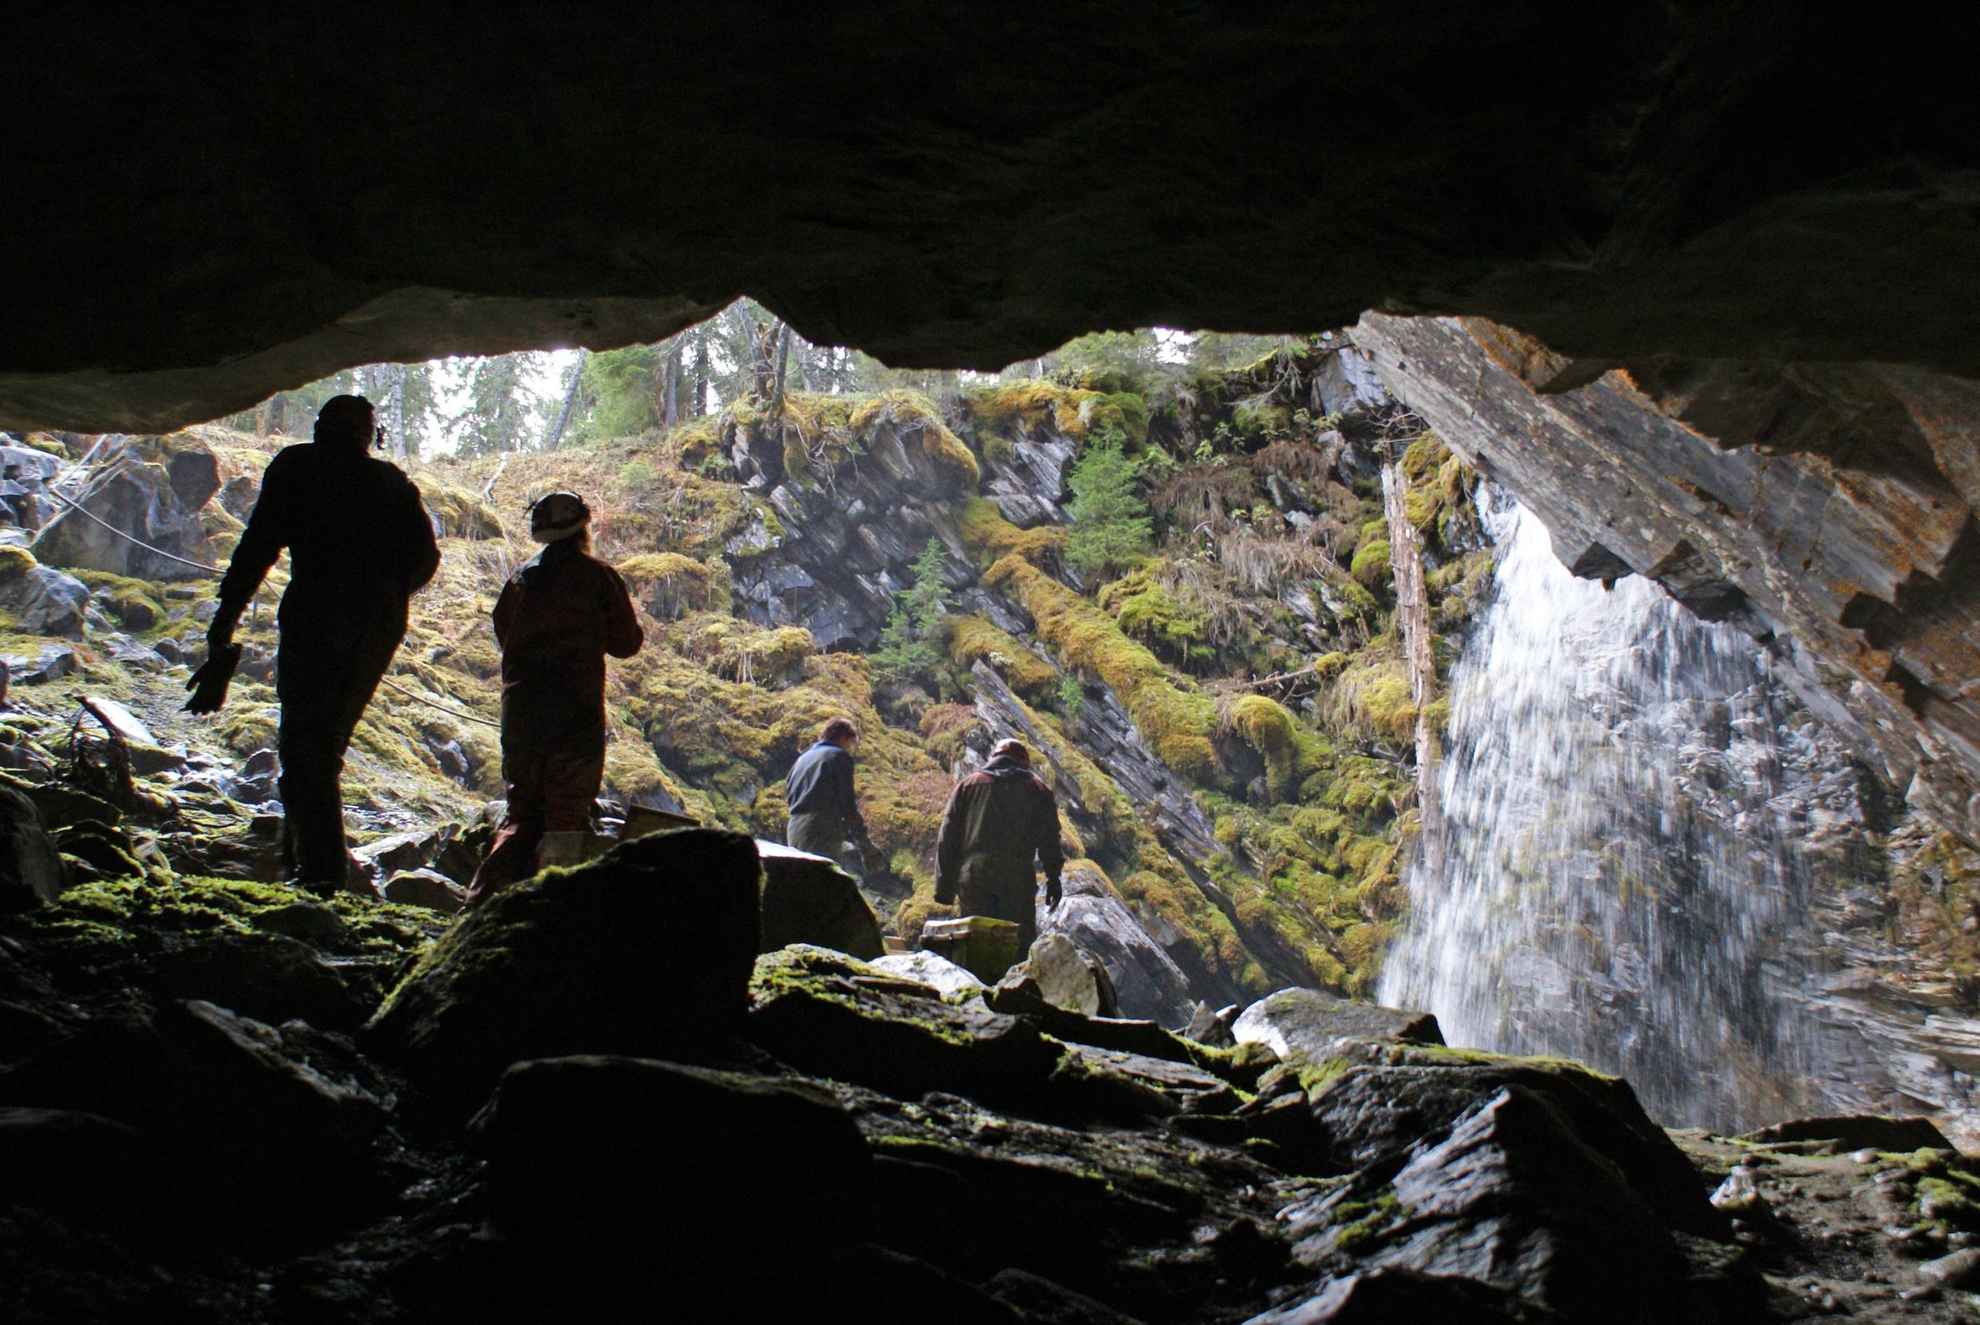 Een blik vanuit een grot naar een open plek met vier mensen die naar een waterval lopen.